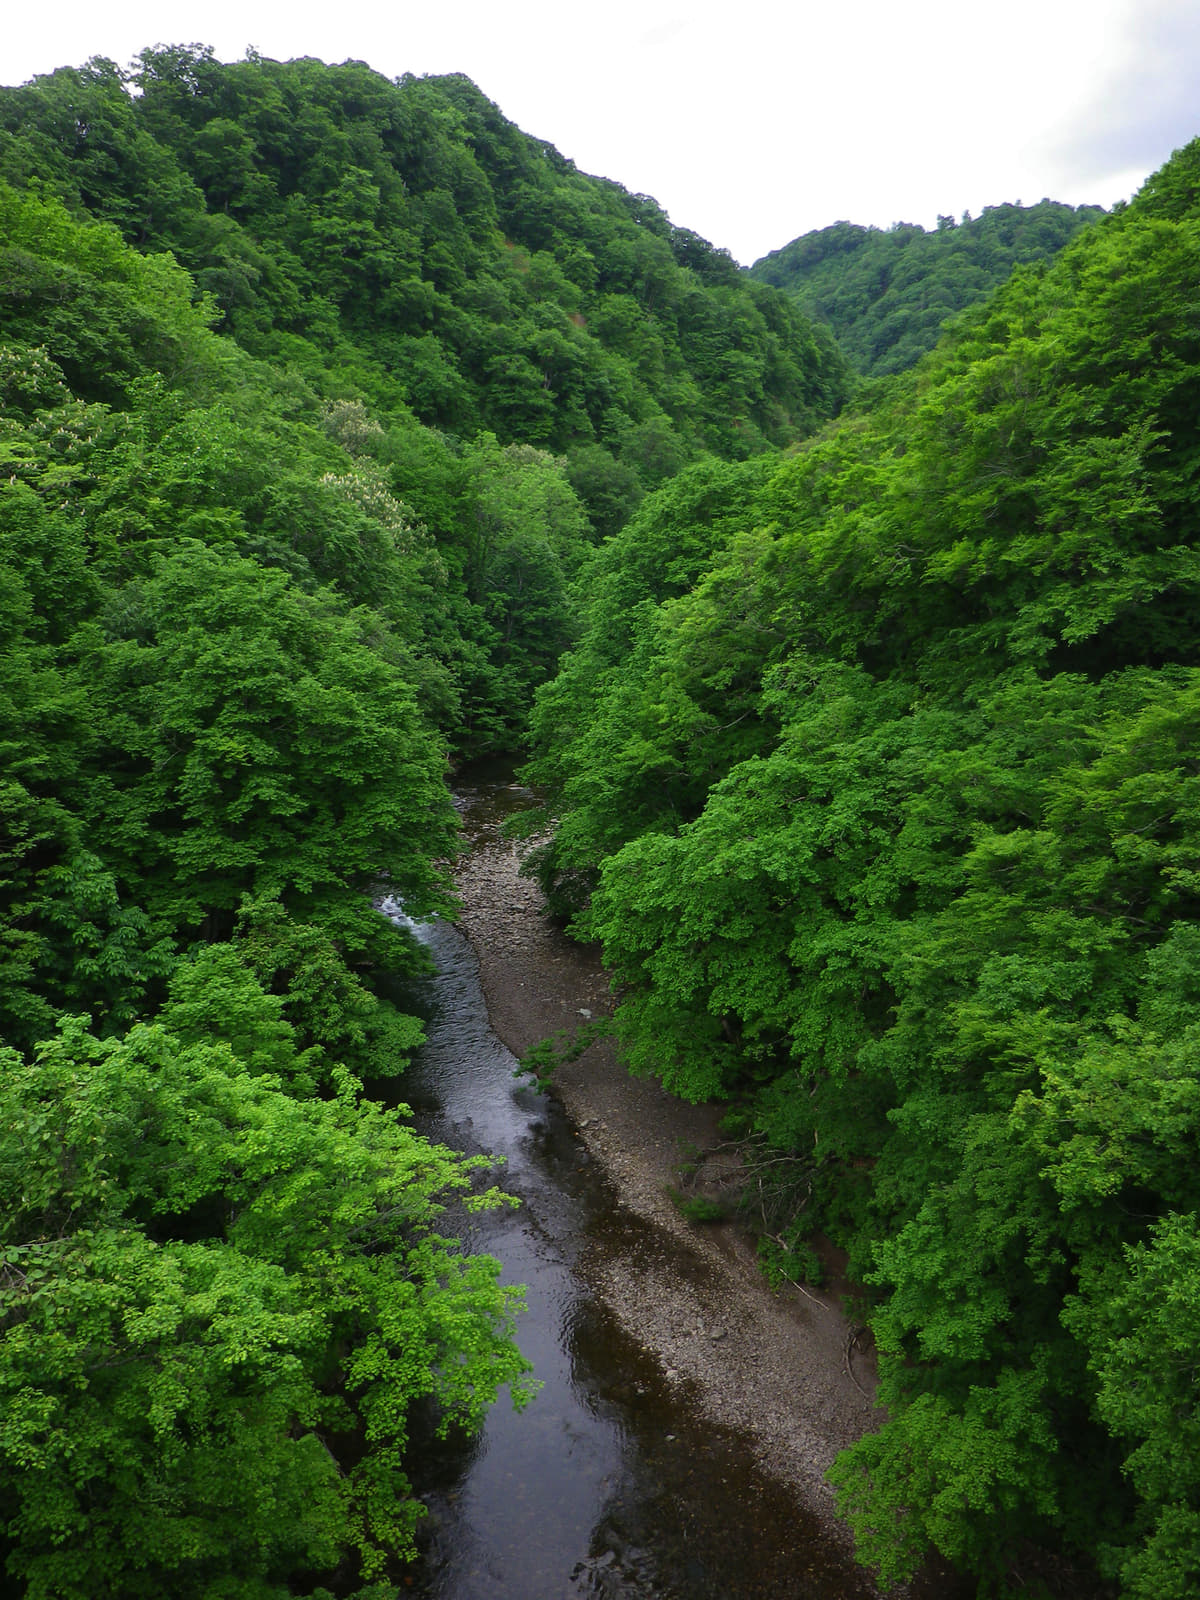 日本は国土の60%以上もが森林である